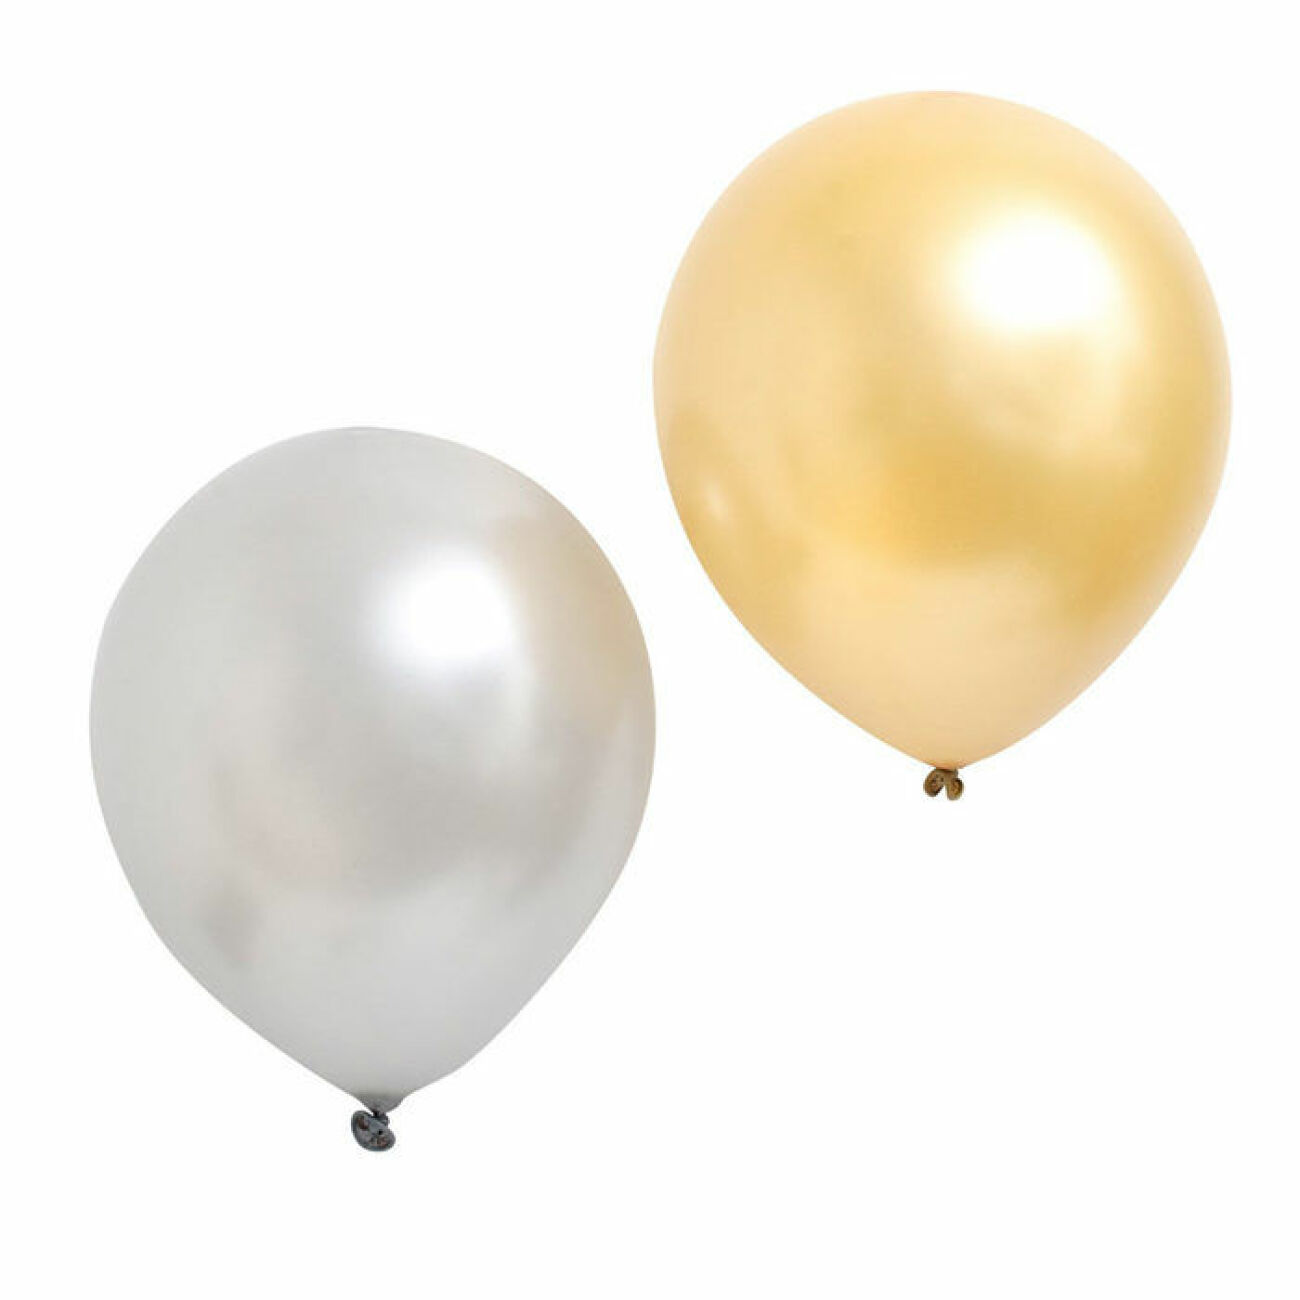 ballonger i guld och silver från Lagerhaus